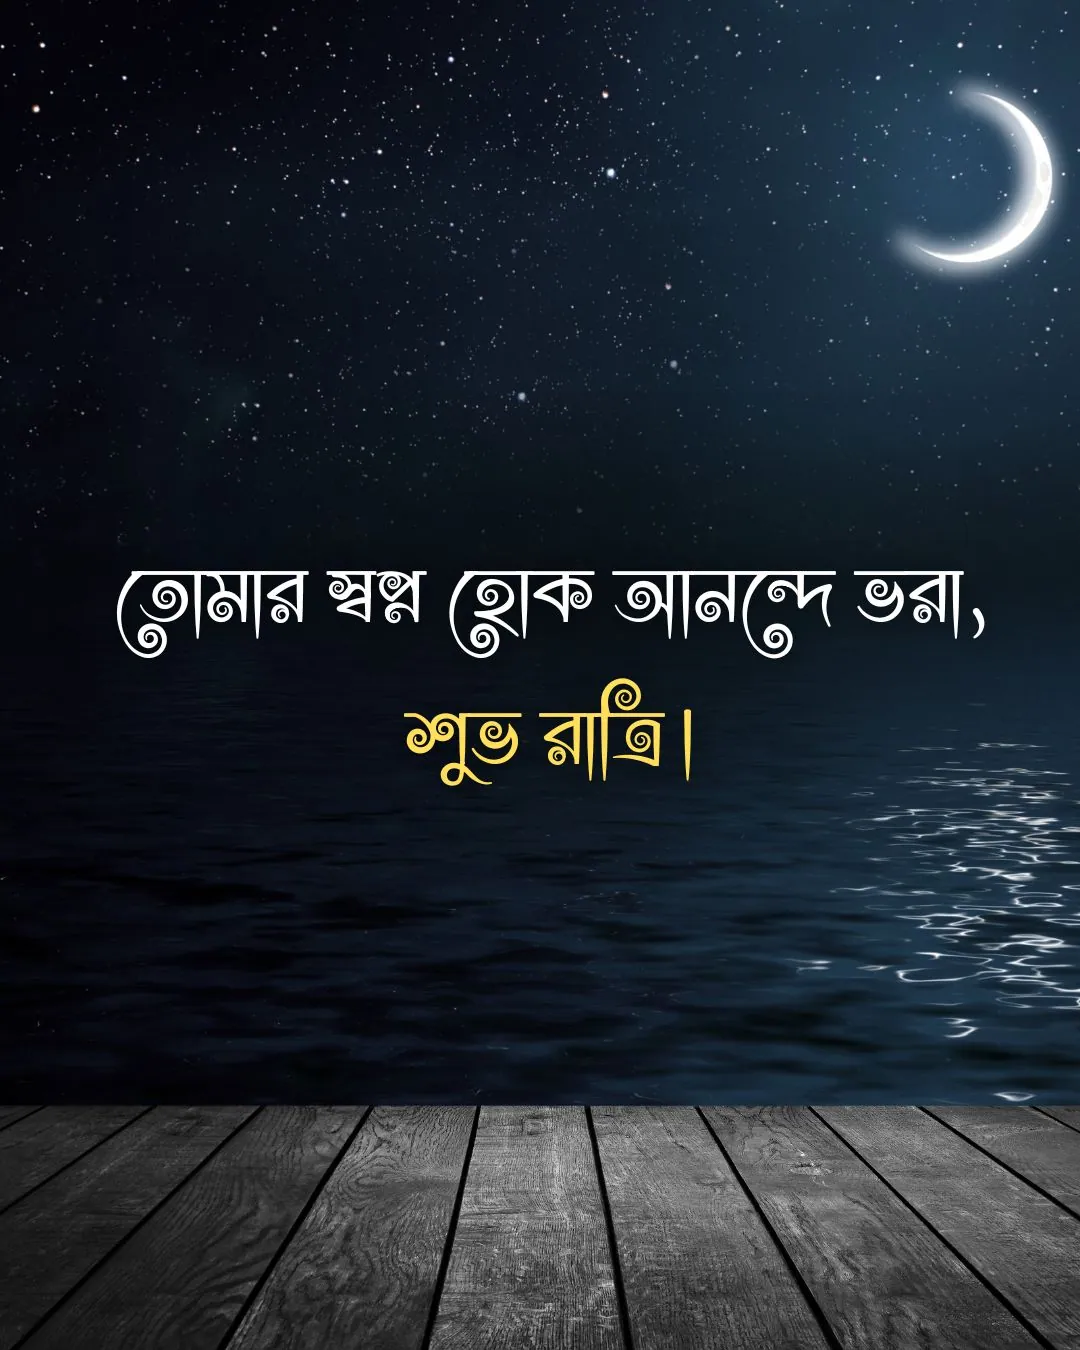 Good night in bengali - তোমার স্বপ্ন হোক আনন্দে ভরা, শুভ রাত্রি